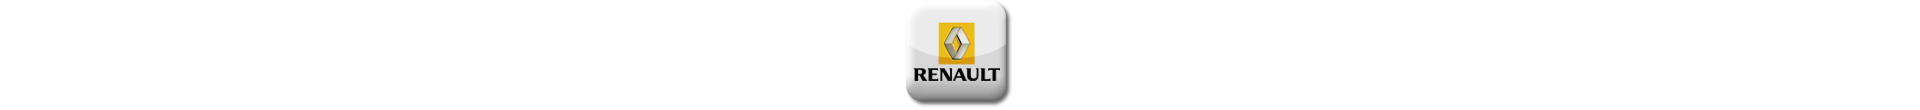 Power Box für Renault Mascott